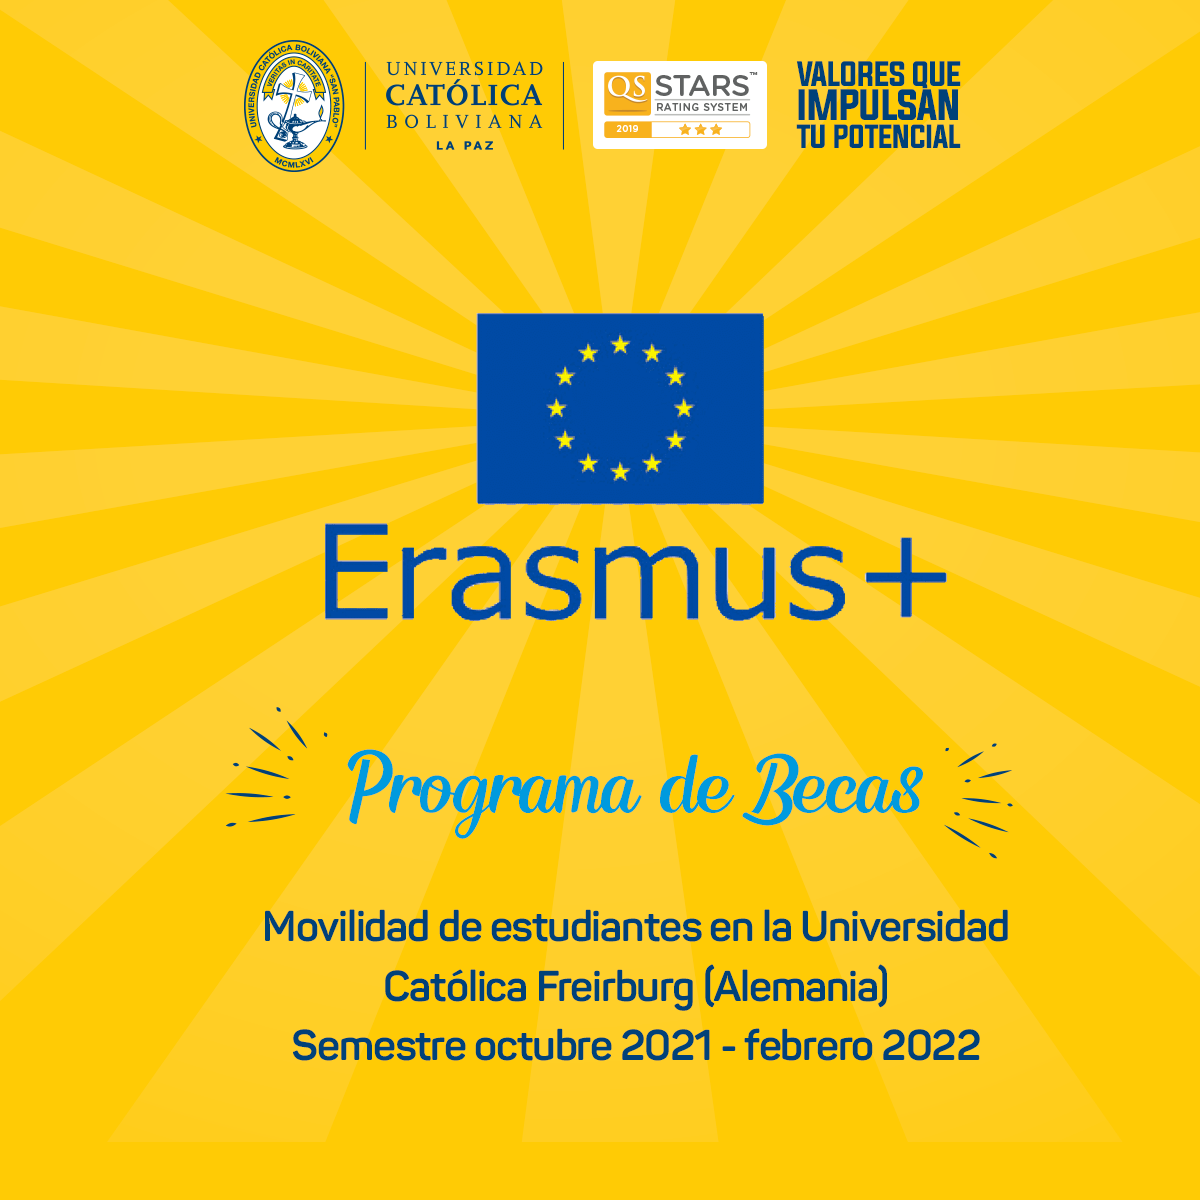 Programa de Becas ERASMUS + abre la convocatoria para la movilidad de estudiantes en la Universidad Católica de Freiburgo en Alemania